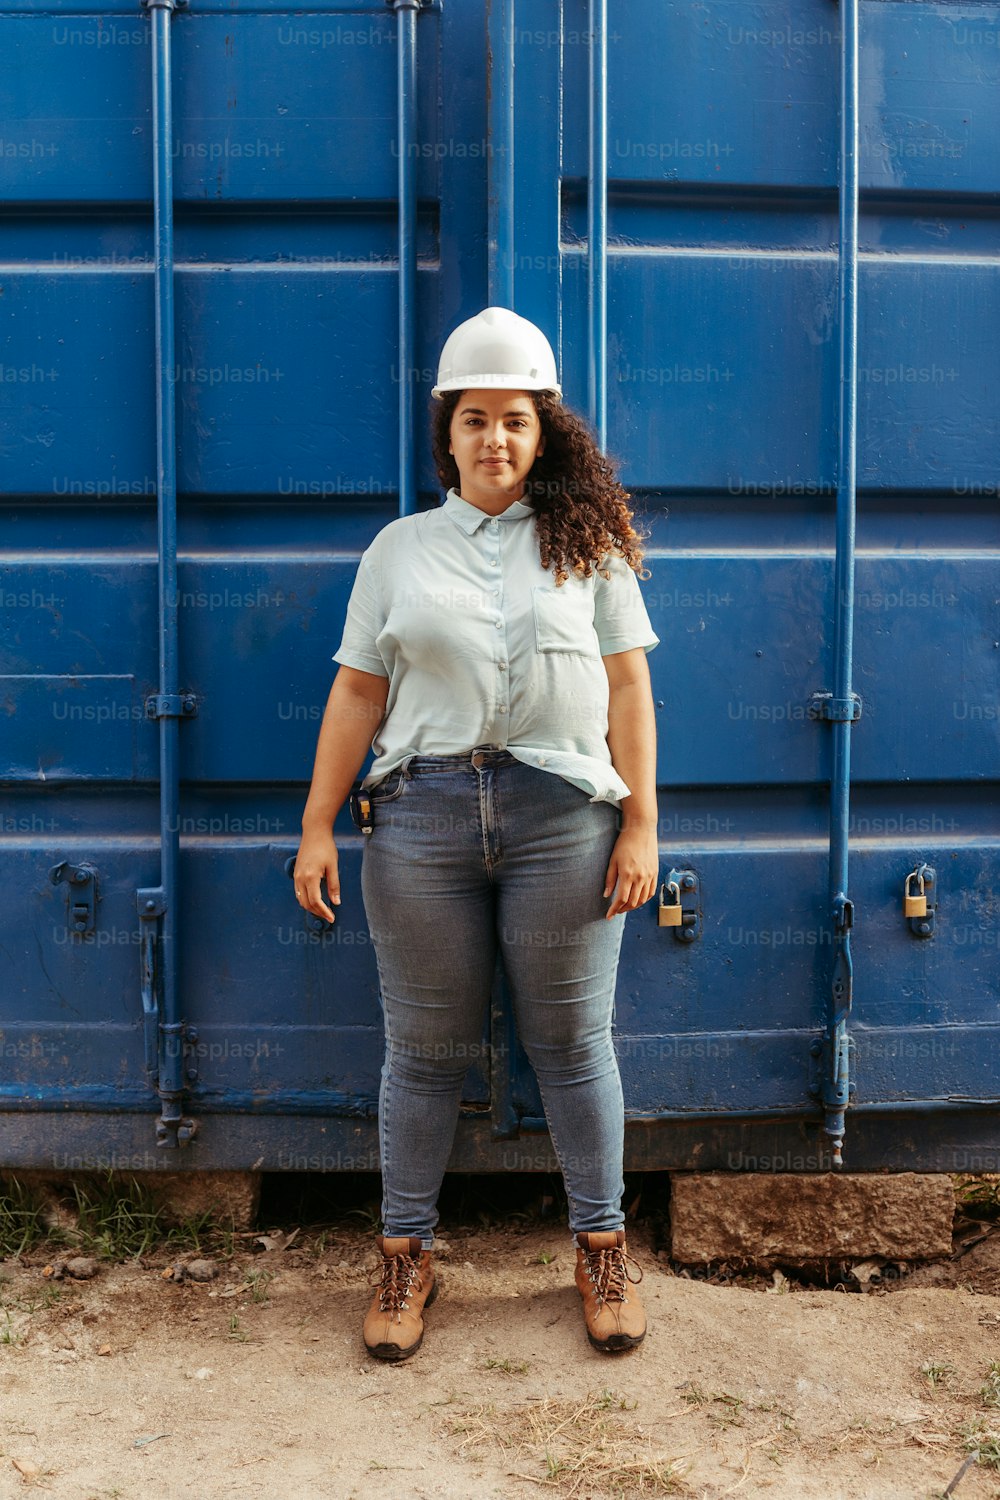 Una mujer parada frente a un contenedor azul